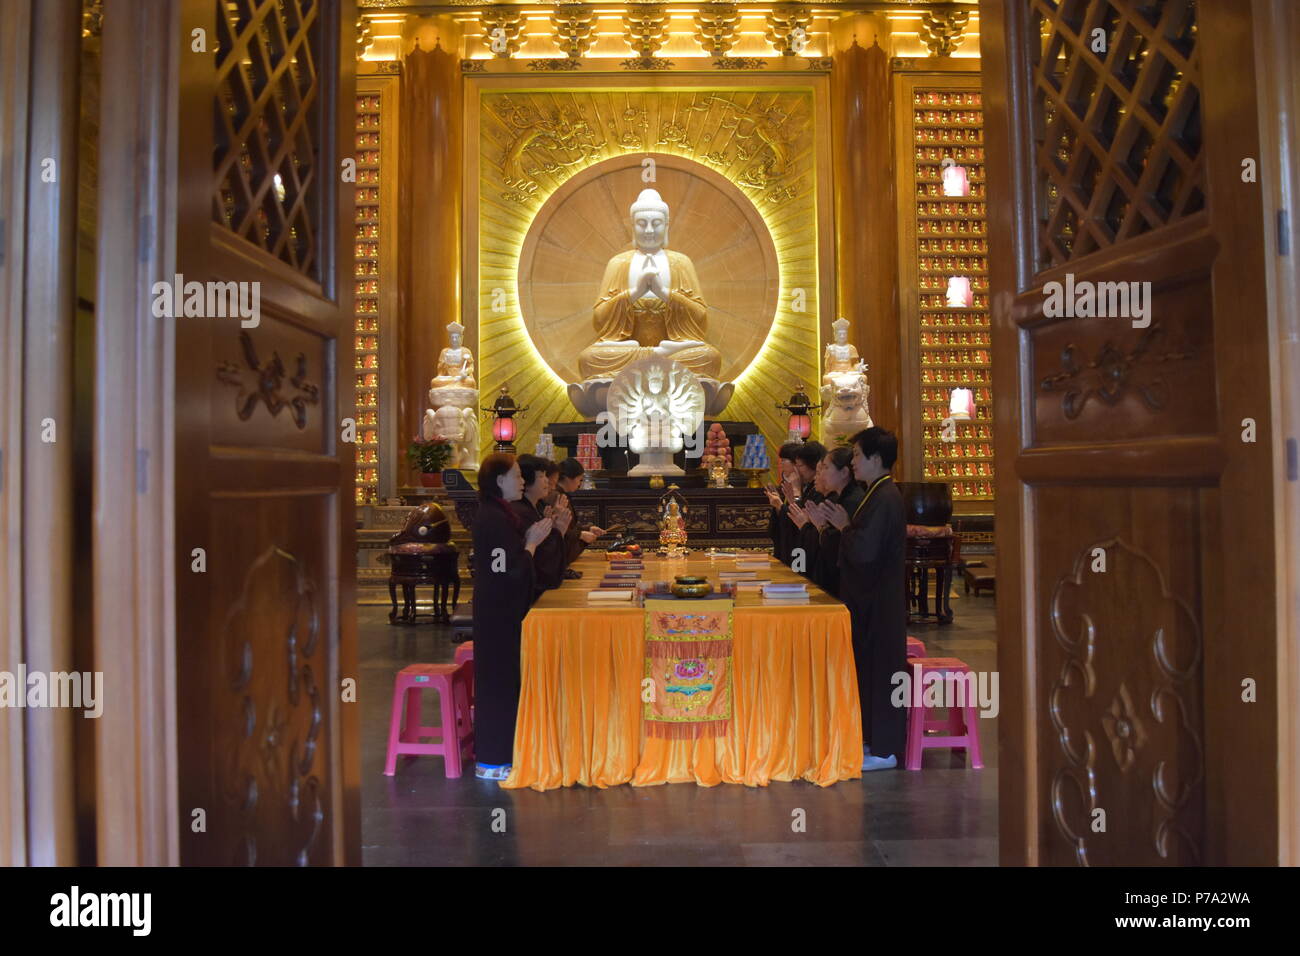 Les moines bouddhistes rituel dans un temple bouddhiste et monastère de Dafo, Beijing Road, Guangzhou, Chine Banque D'Images